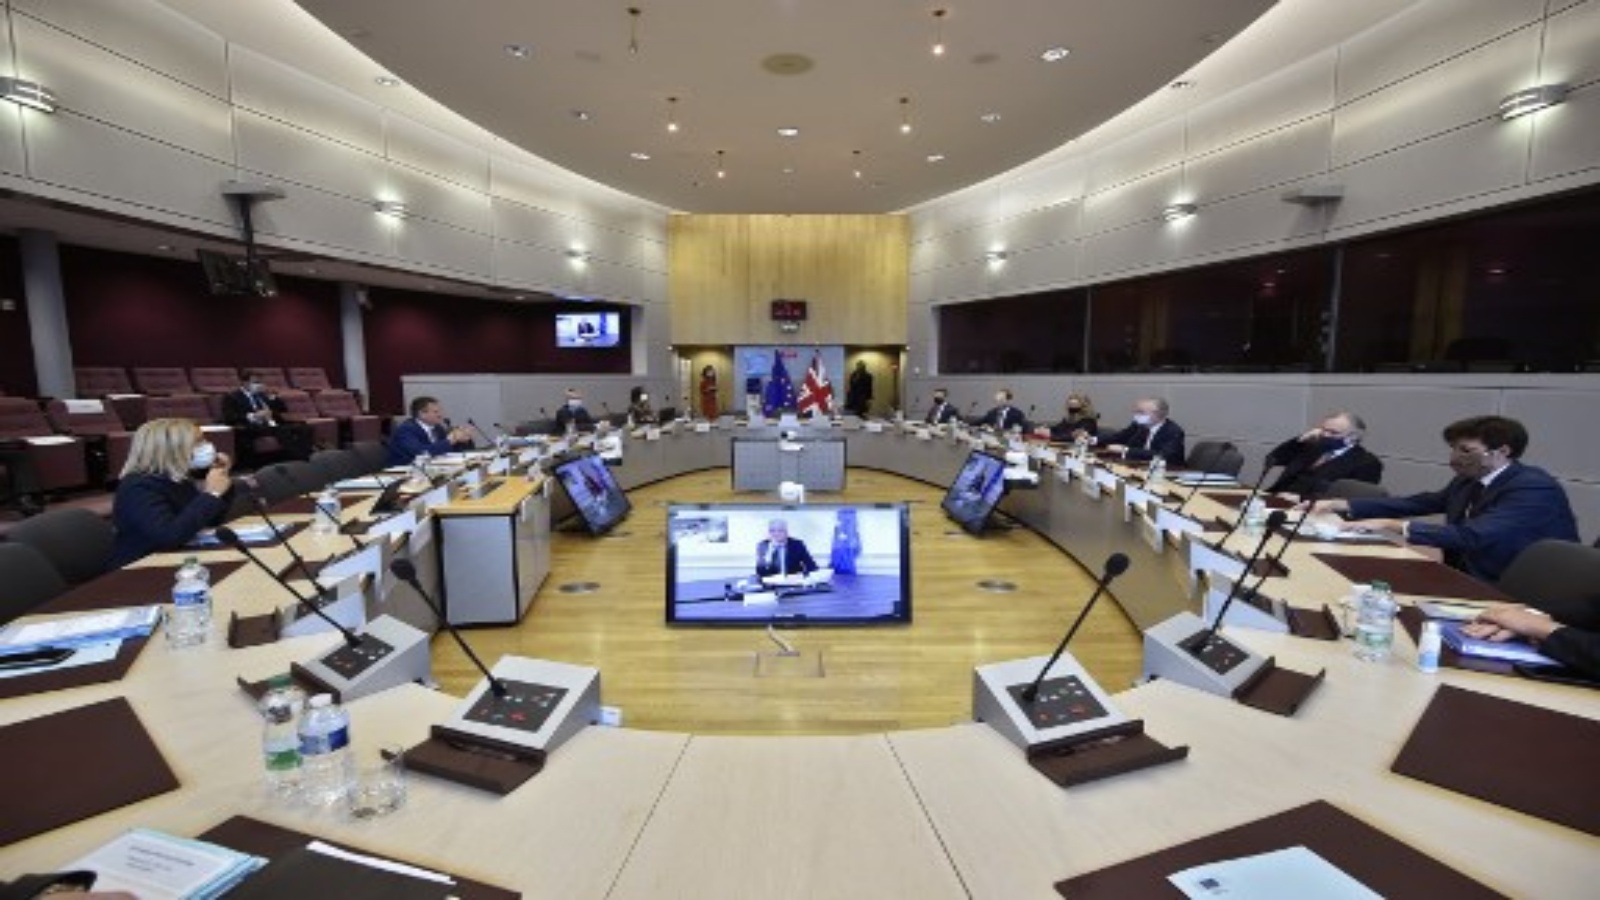 اجتماع الثالث للجنة المشتركة بين الاتحاد الأوروبي والمملكة المتحدة في مقر الاتحاد الأوروبي في بروكسل في 28 سبتمبر 2020.